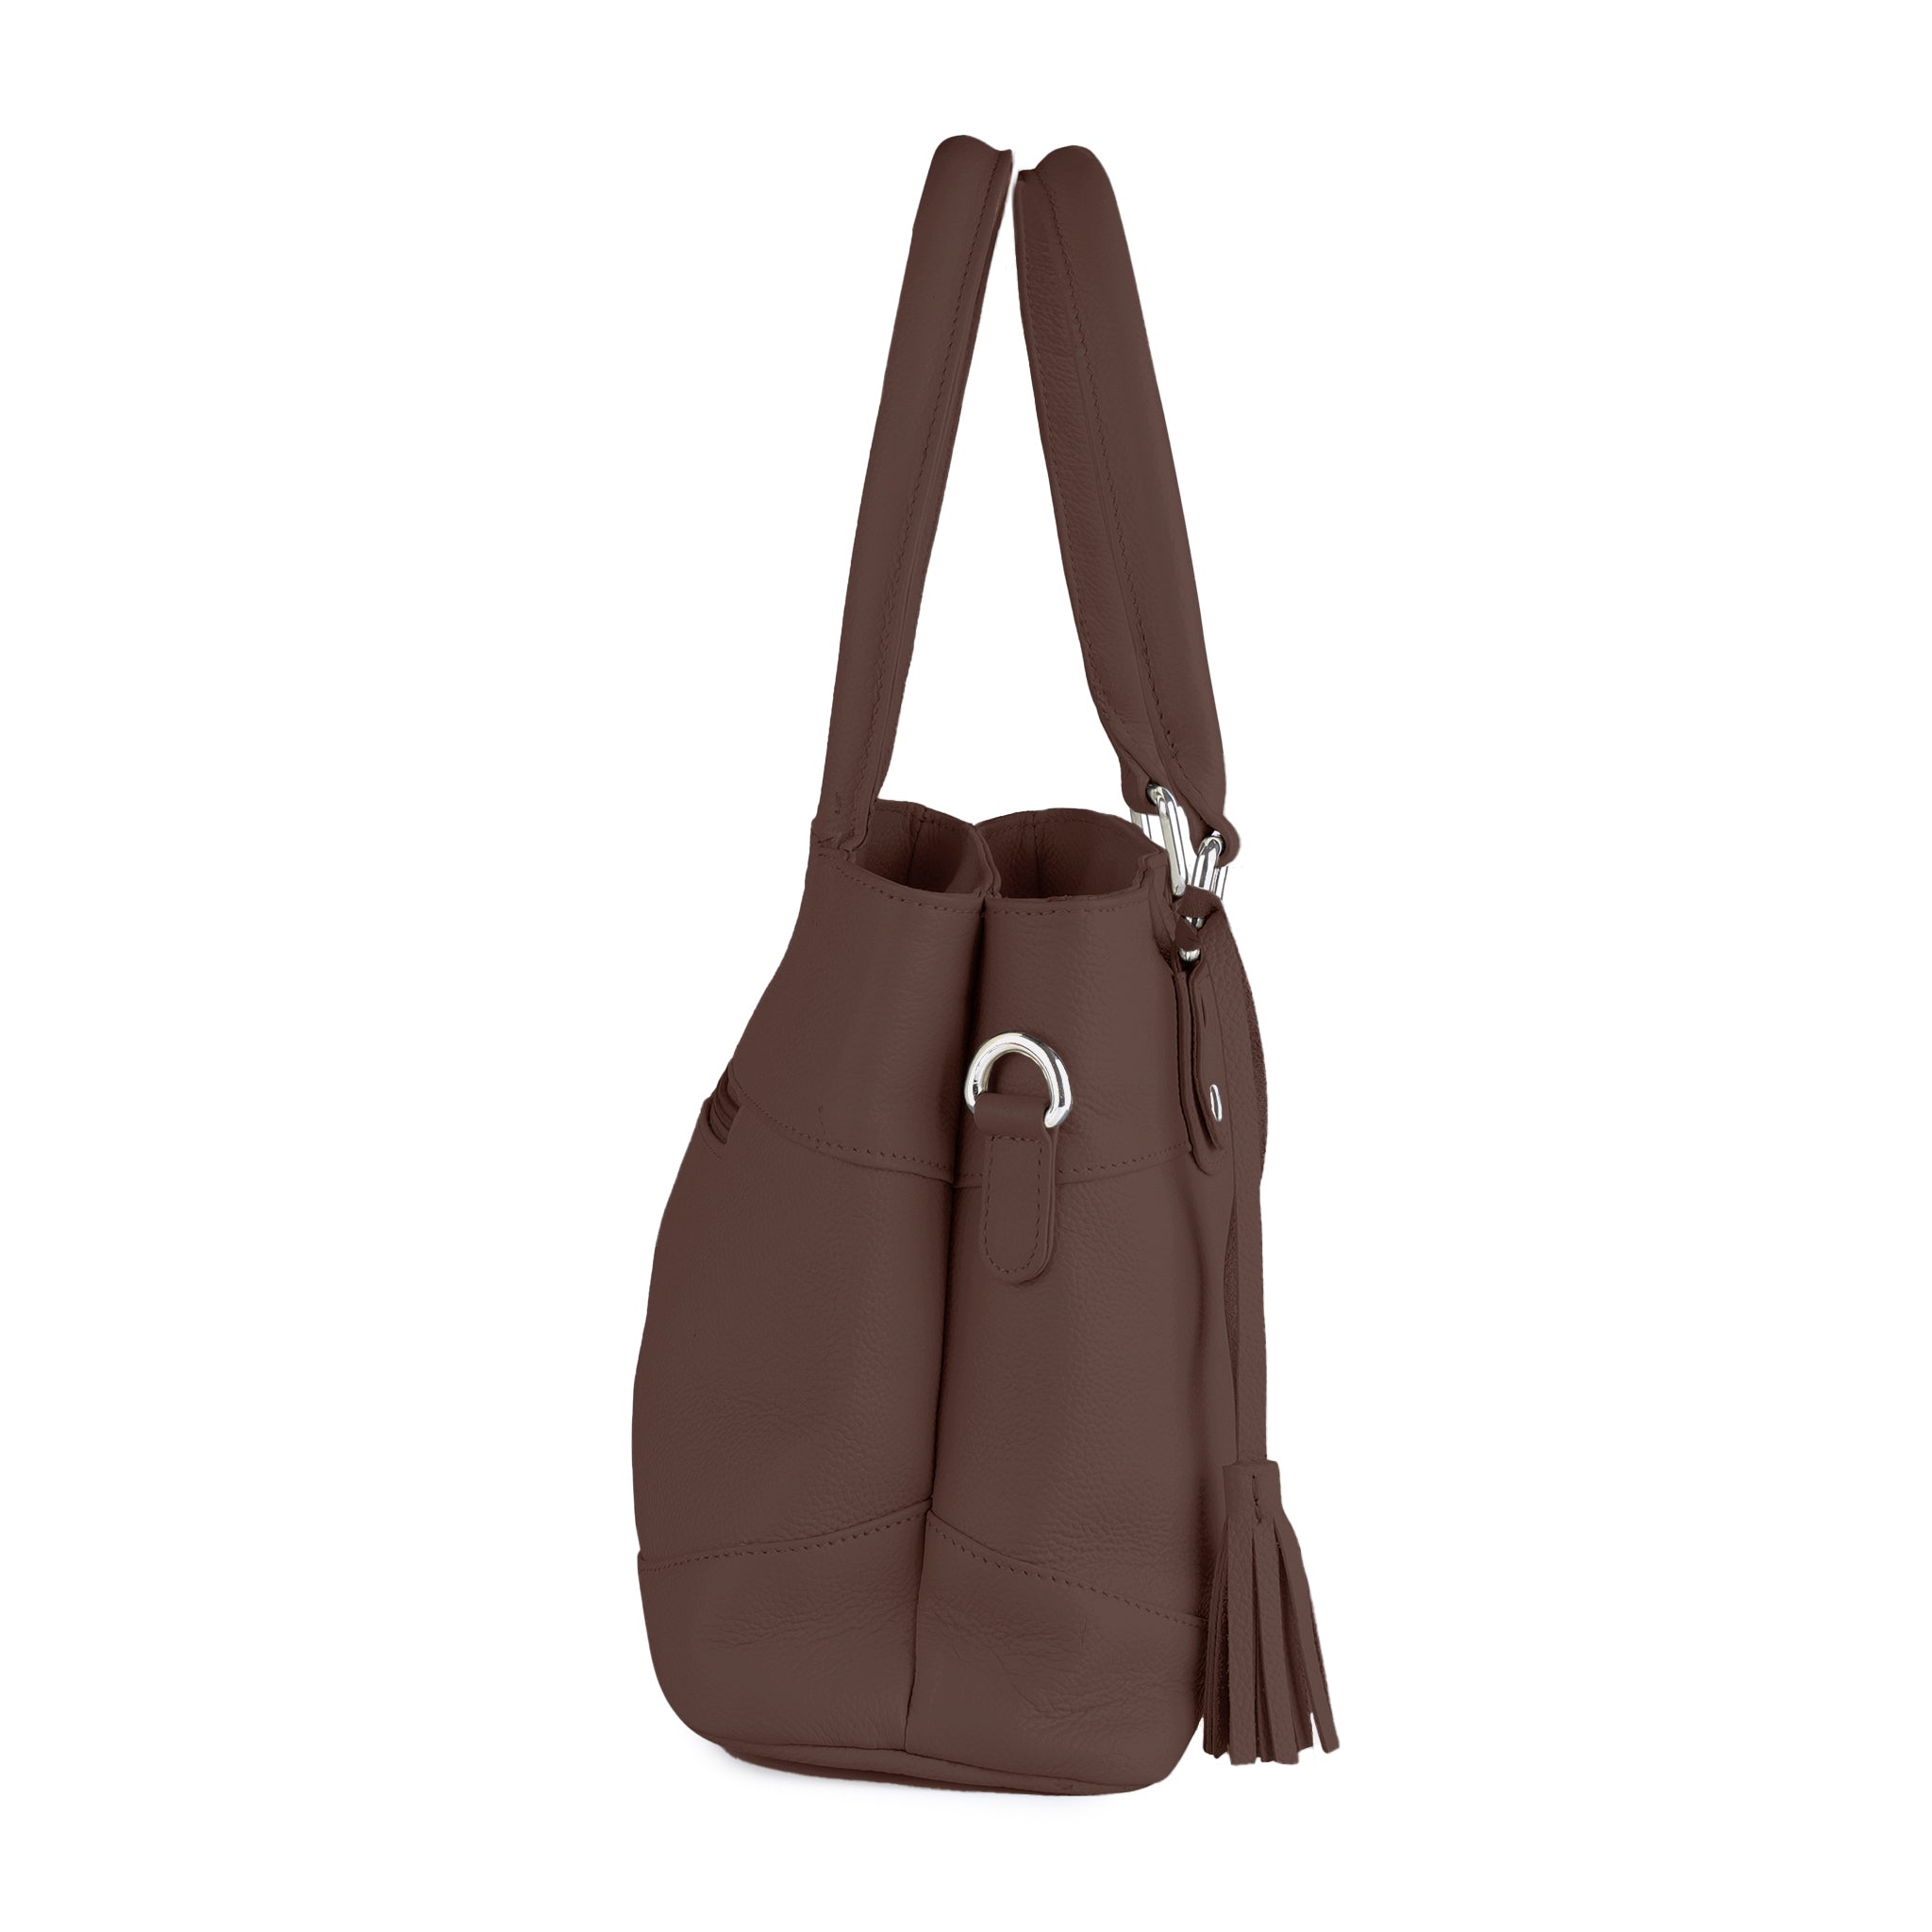 Laromni Women Ladies Leather Handbag Shoulder Tote Purse Satchel Messenger  Bag | eBay